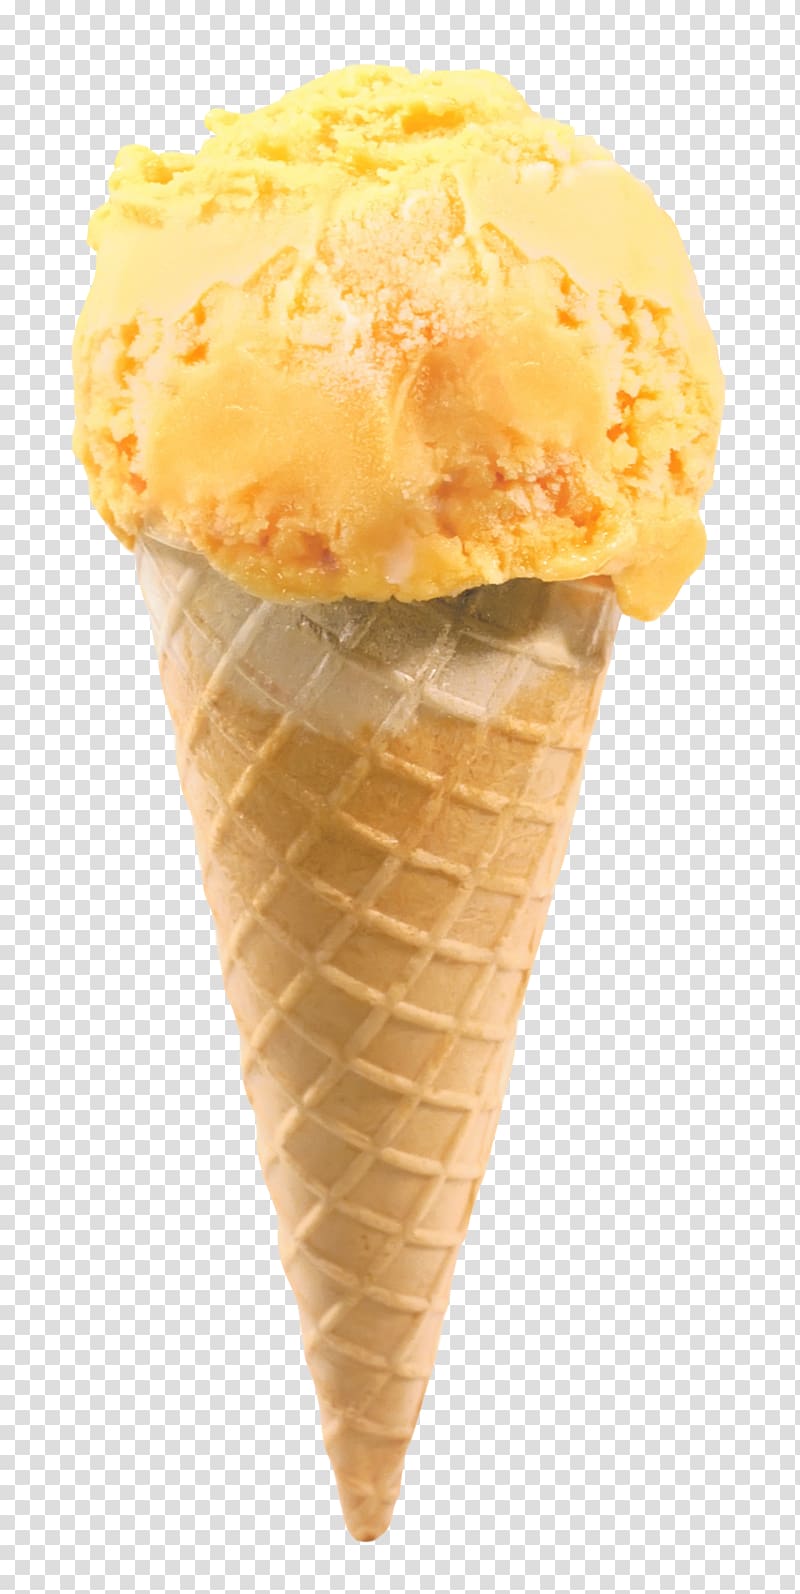 Ice cream cone Gelato Milkshake Snow cone, ice cream transparent background PNG clipart